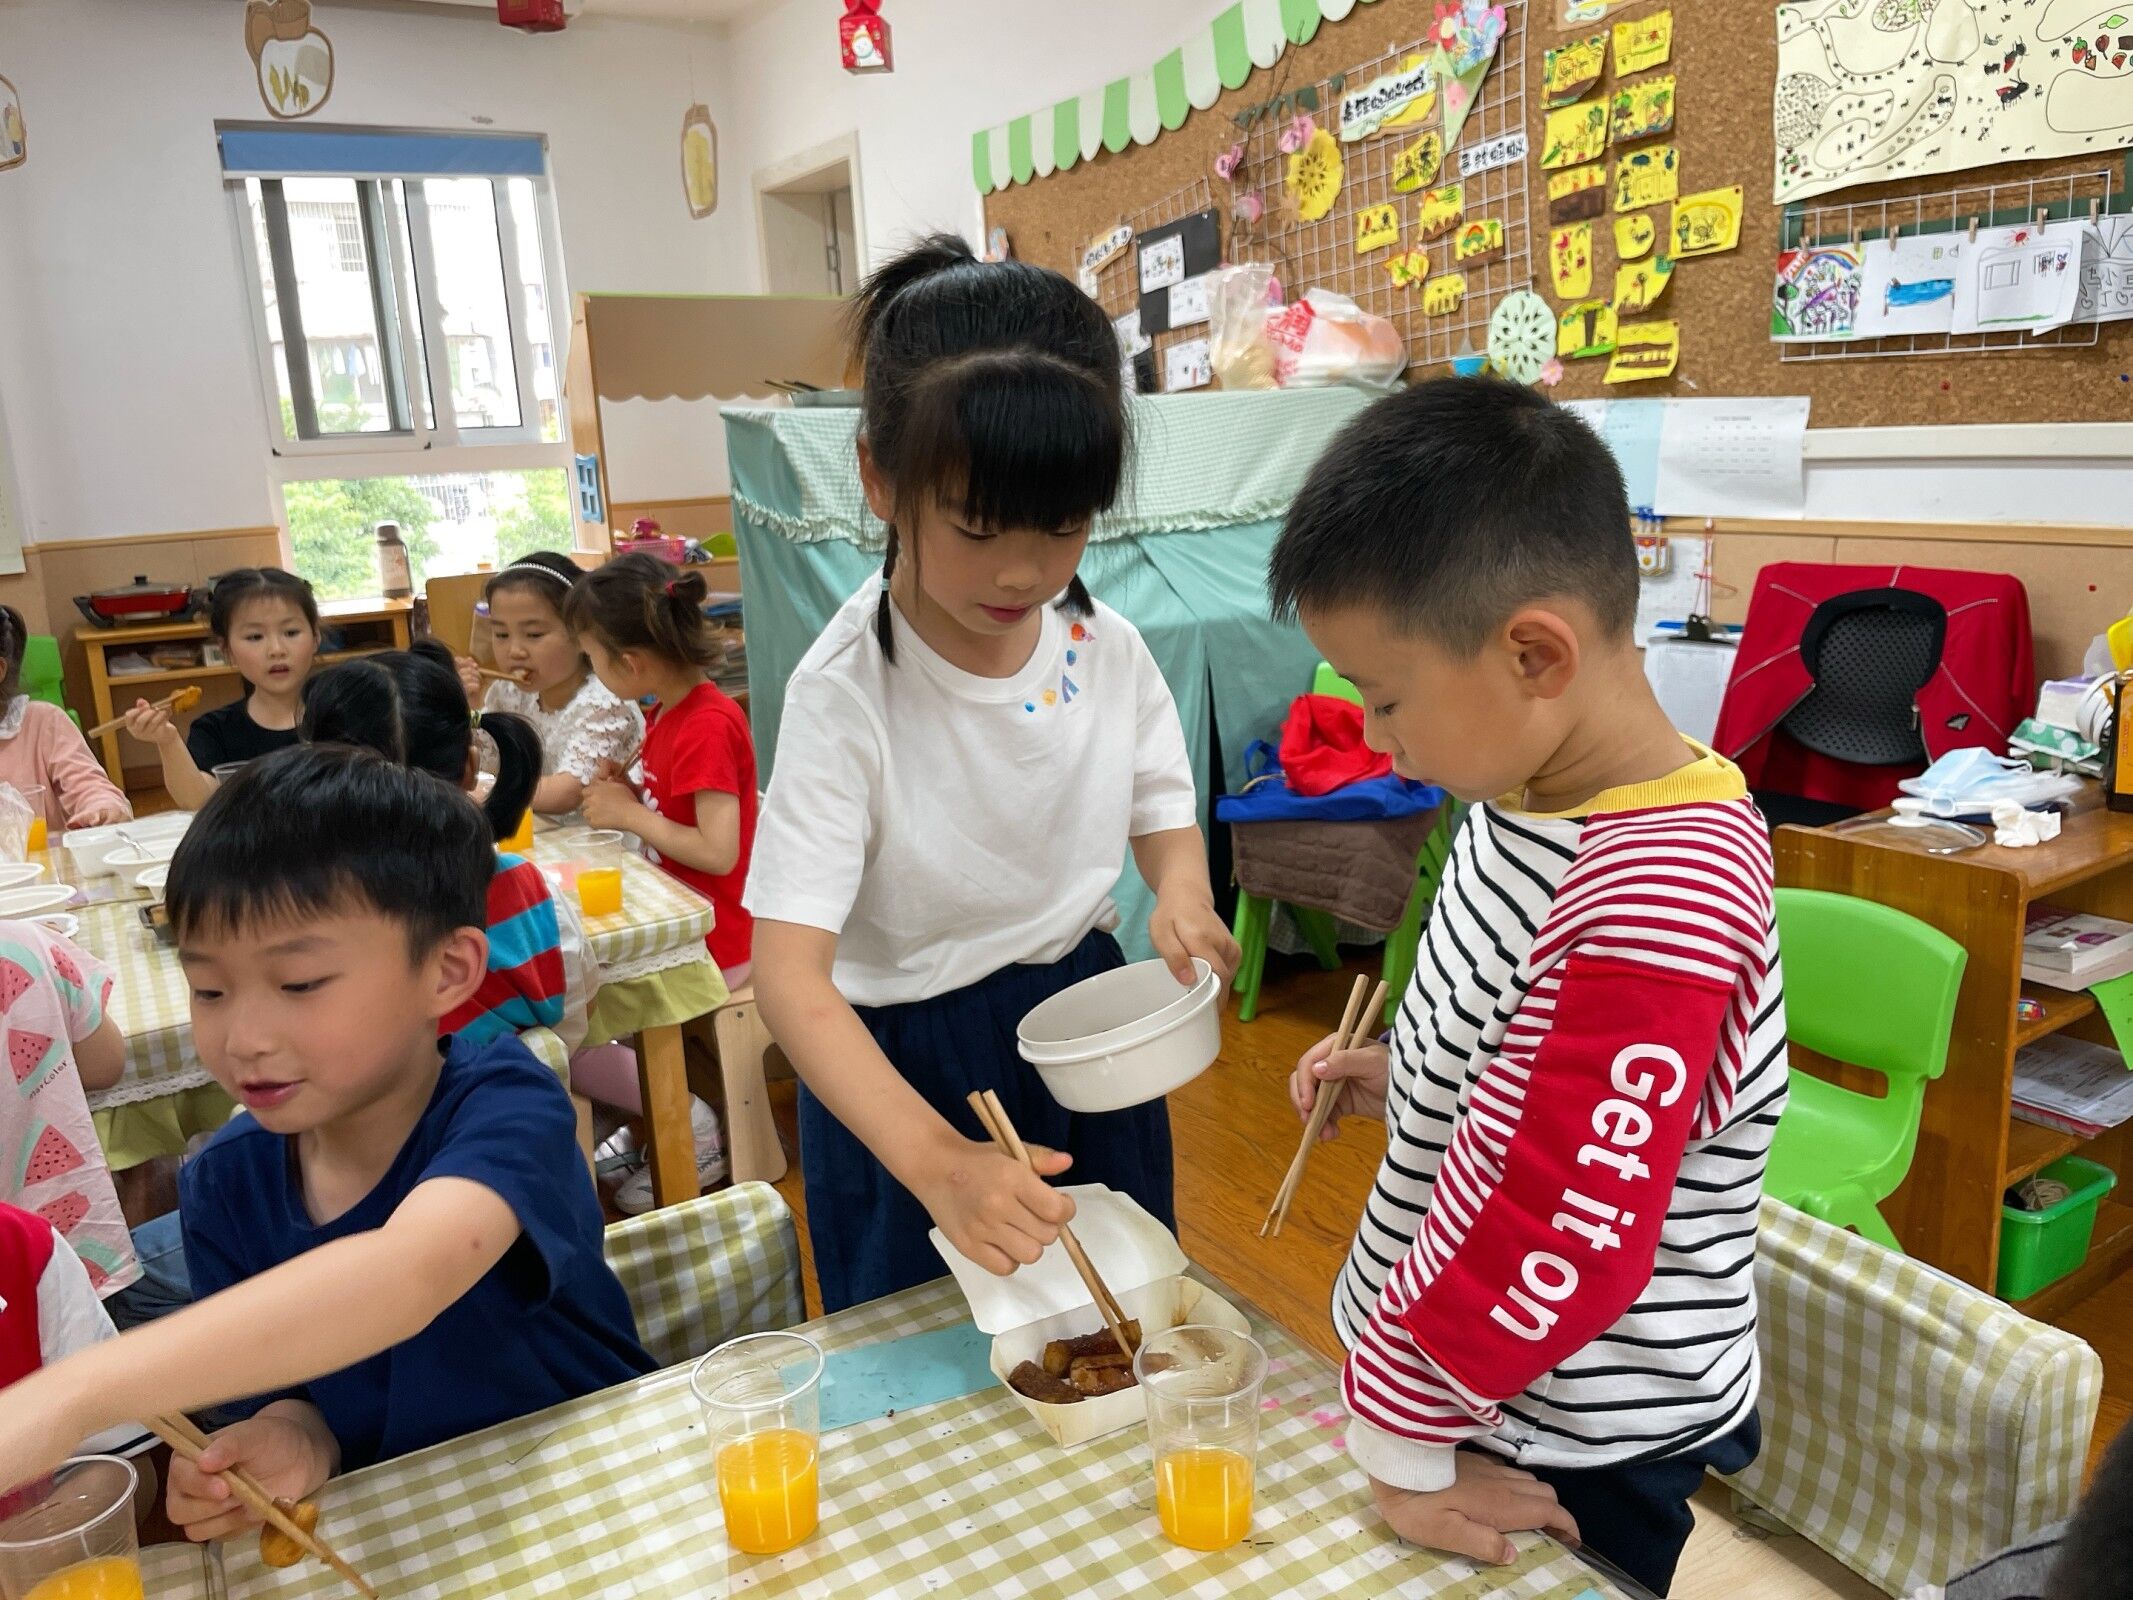 幼儿园的烹饪活动-糖豆宝宝的幸福小屋